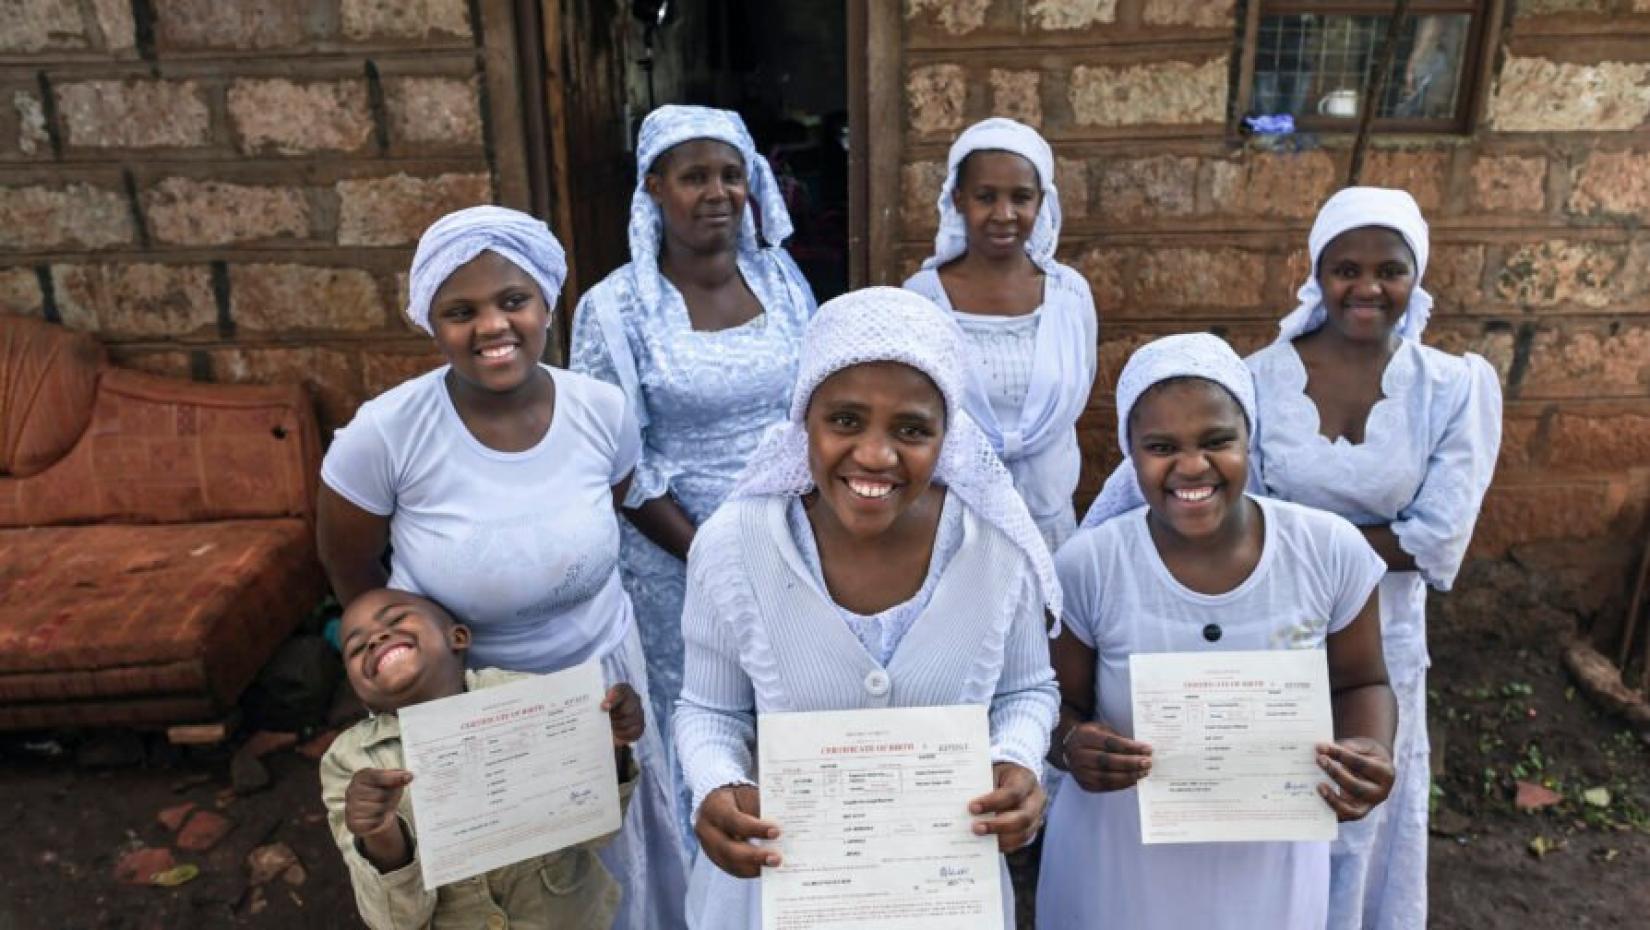 Mulher Shona apátrida, Nosizi Reuben (no centro) posa com sua família enquanto segura sua certidão de nascimento recém-emitida em Kinoo, Quênia.